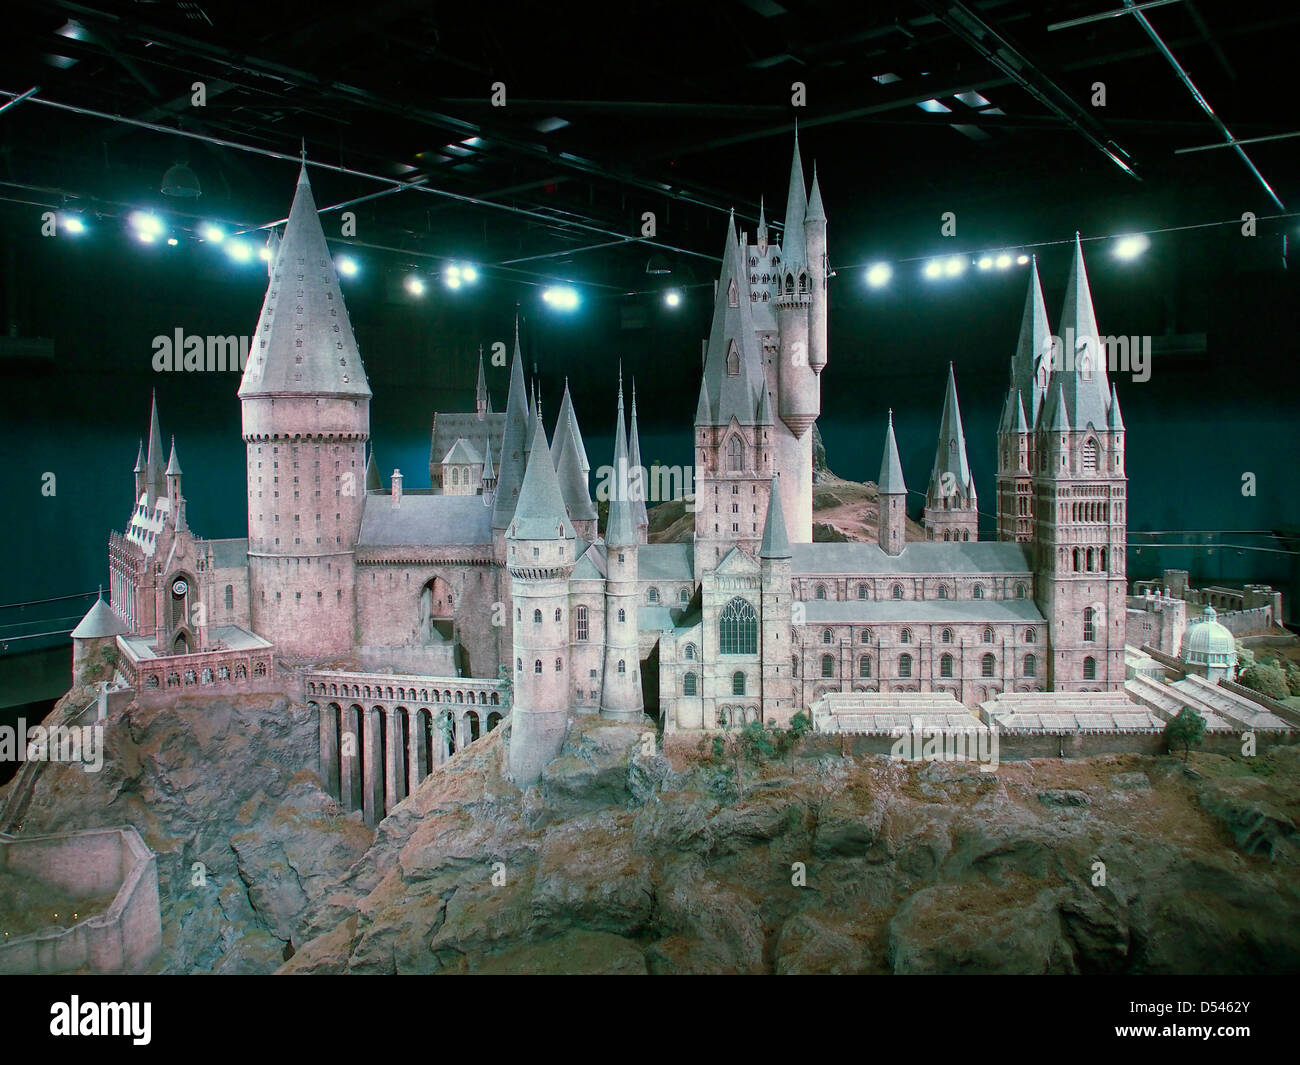 Escuela hogwarts fotografías e imágenes de alta resolución - Alamy